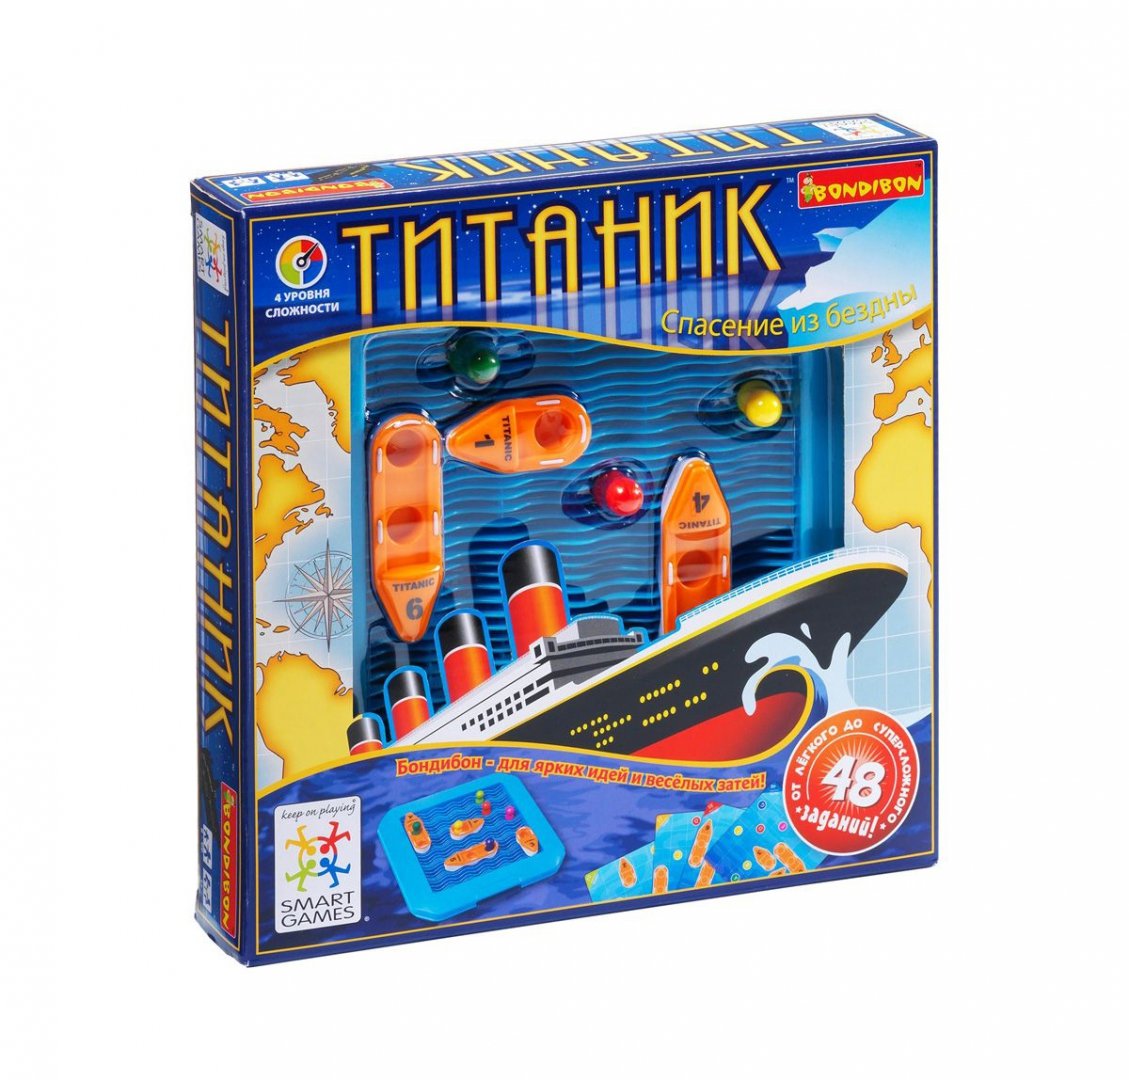 Иллюстрация 1 из 5 для Логическая игра "Титаник" (SG 510 RU) | Лабиринт - игрушки. Источник: Лабиринт